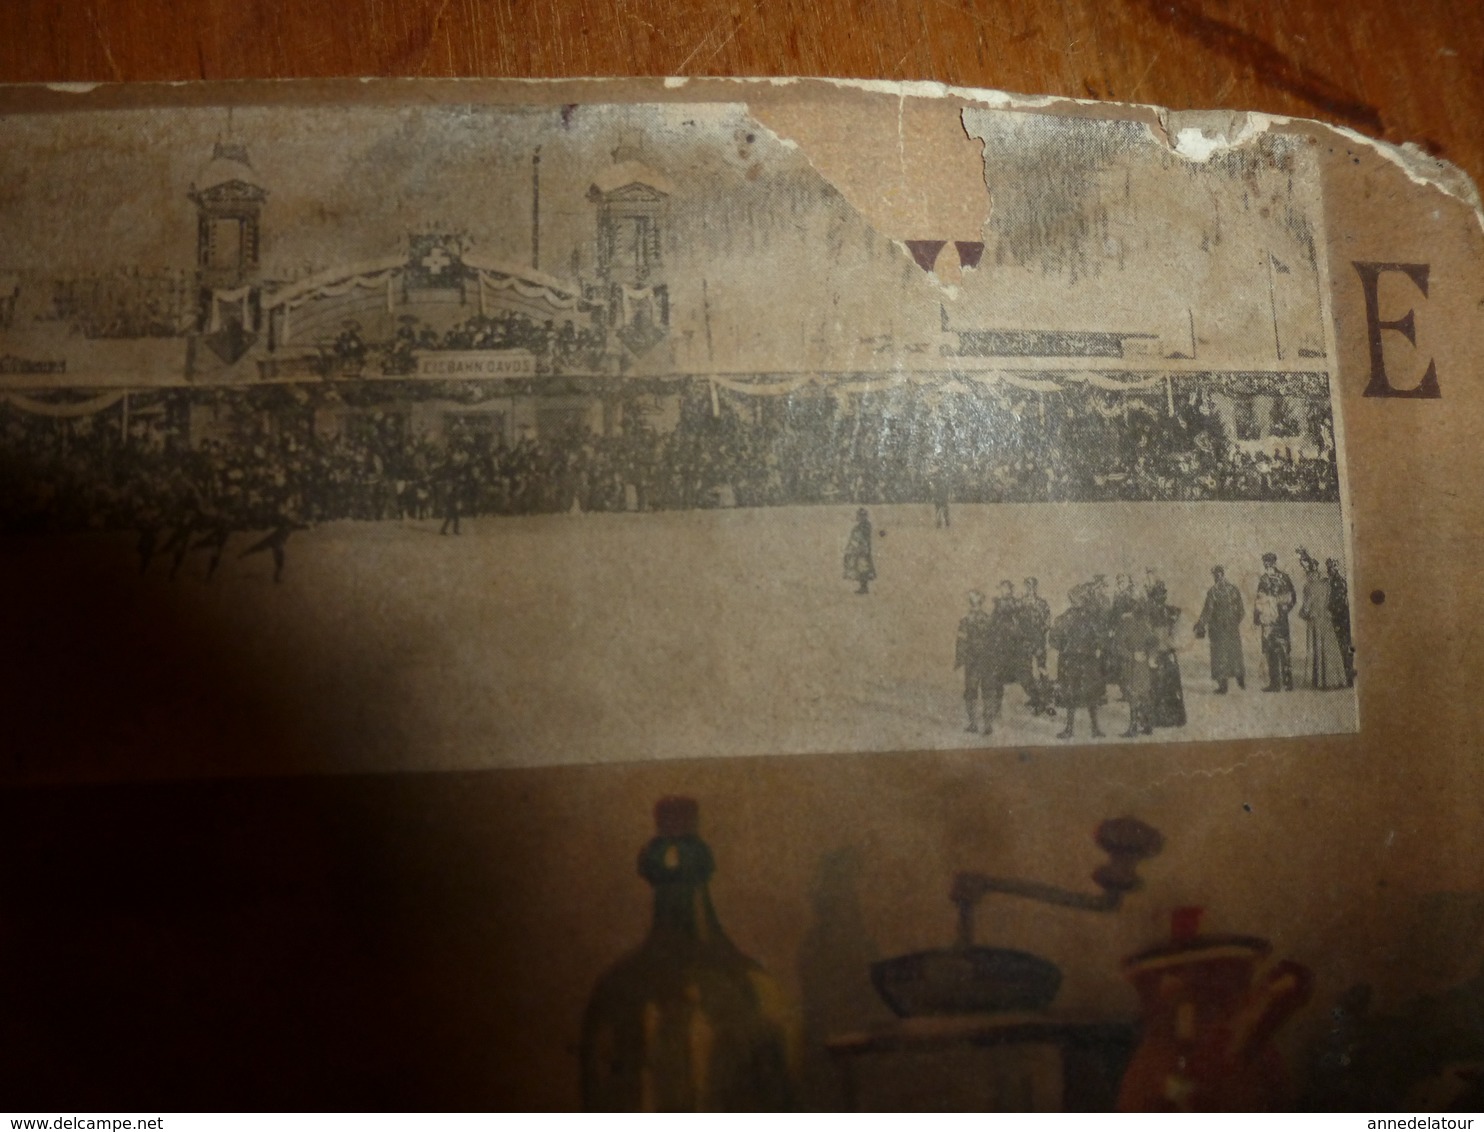 1899 Grand carton publicitaire ancien avec calendrier au dos LA SAMARITAINE -Grands Magasins de Nouveautés à PARIS..etc